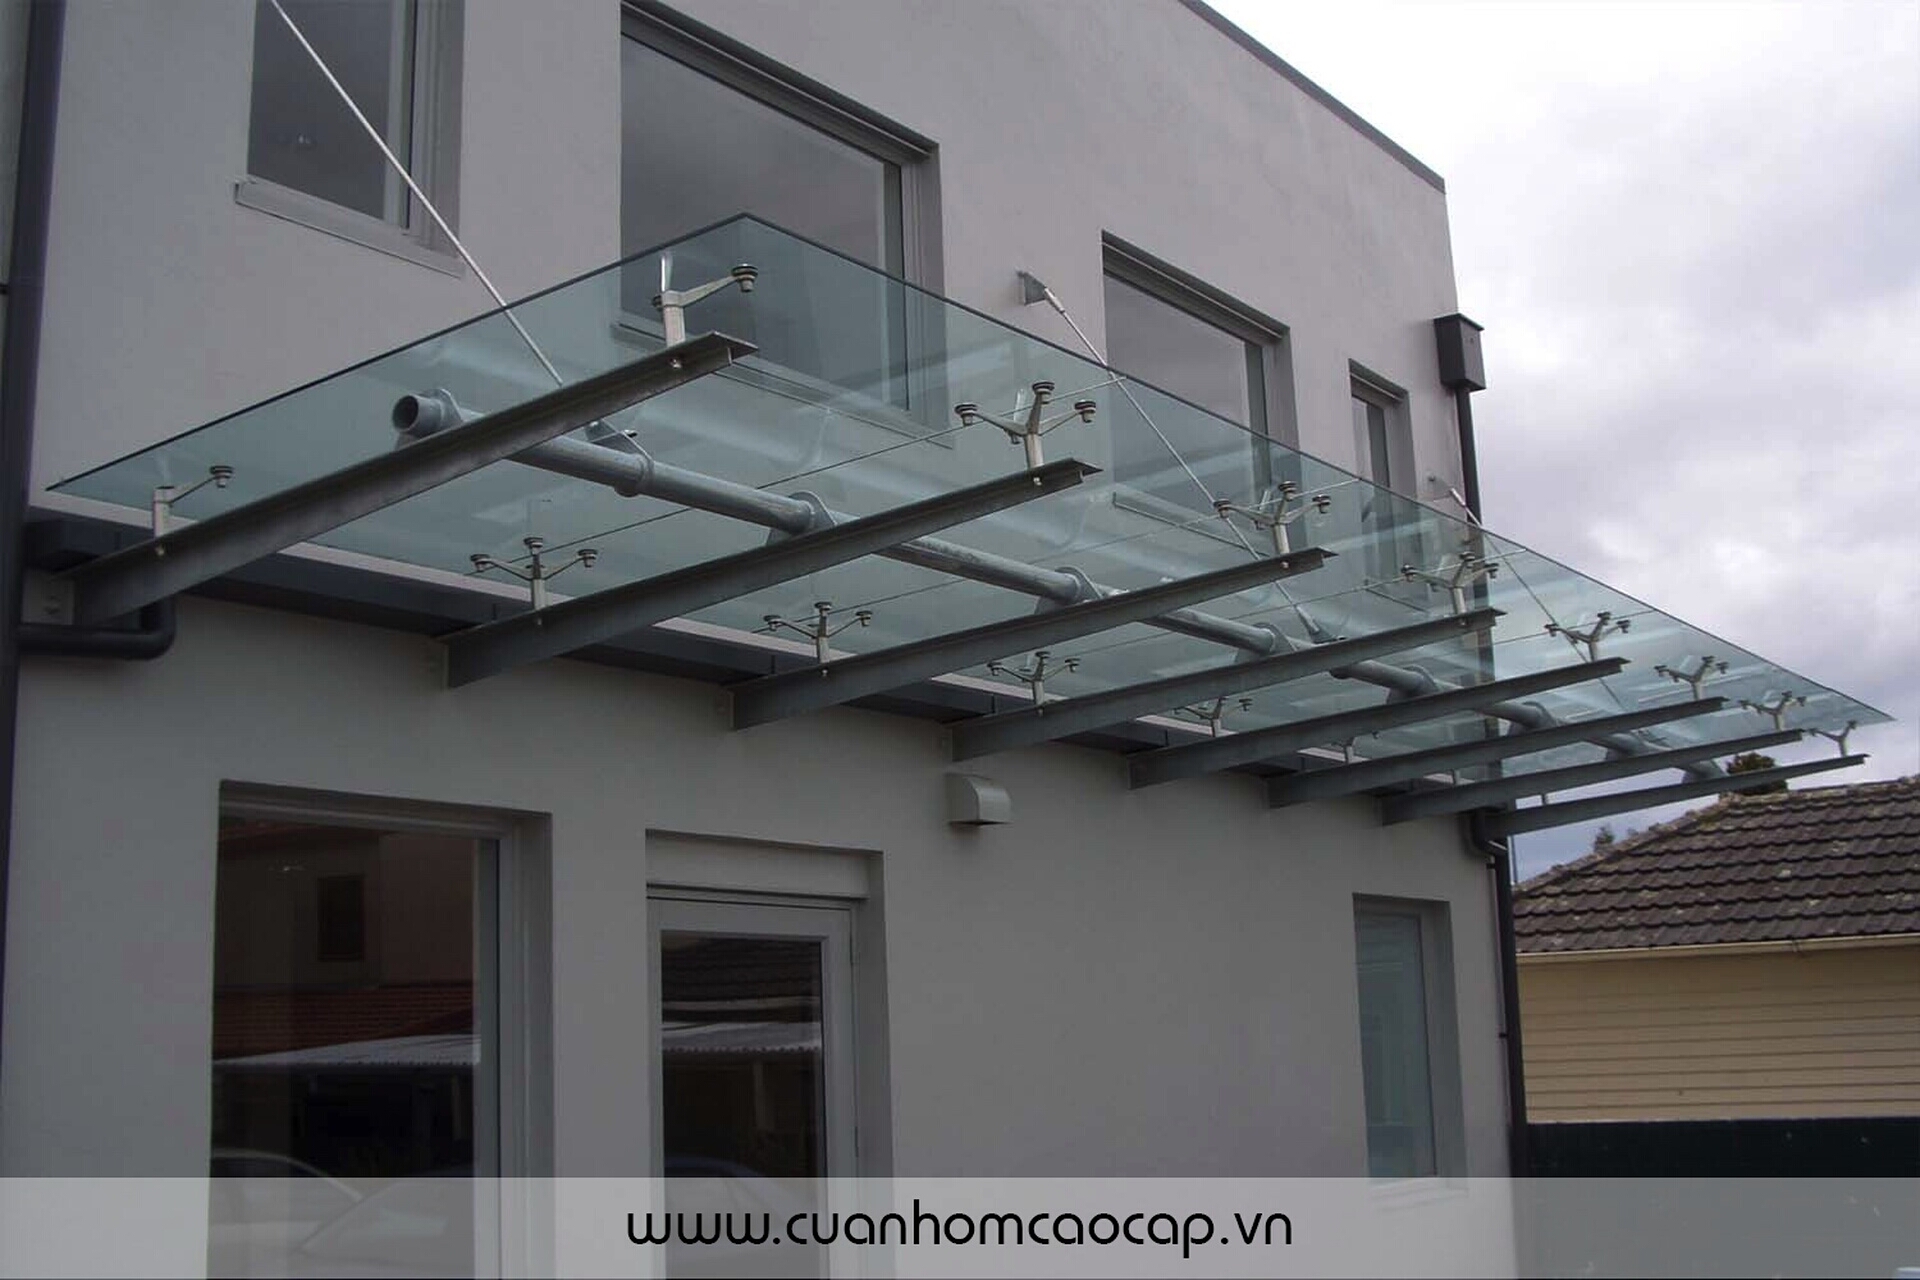 Монтаж стеклянных балконов - подробные инструкции и особенности установки